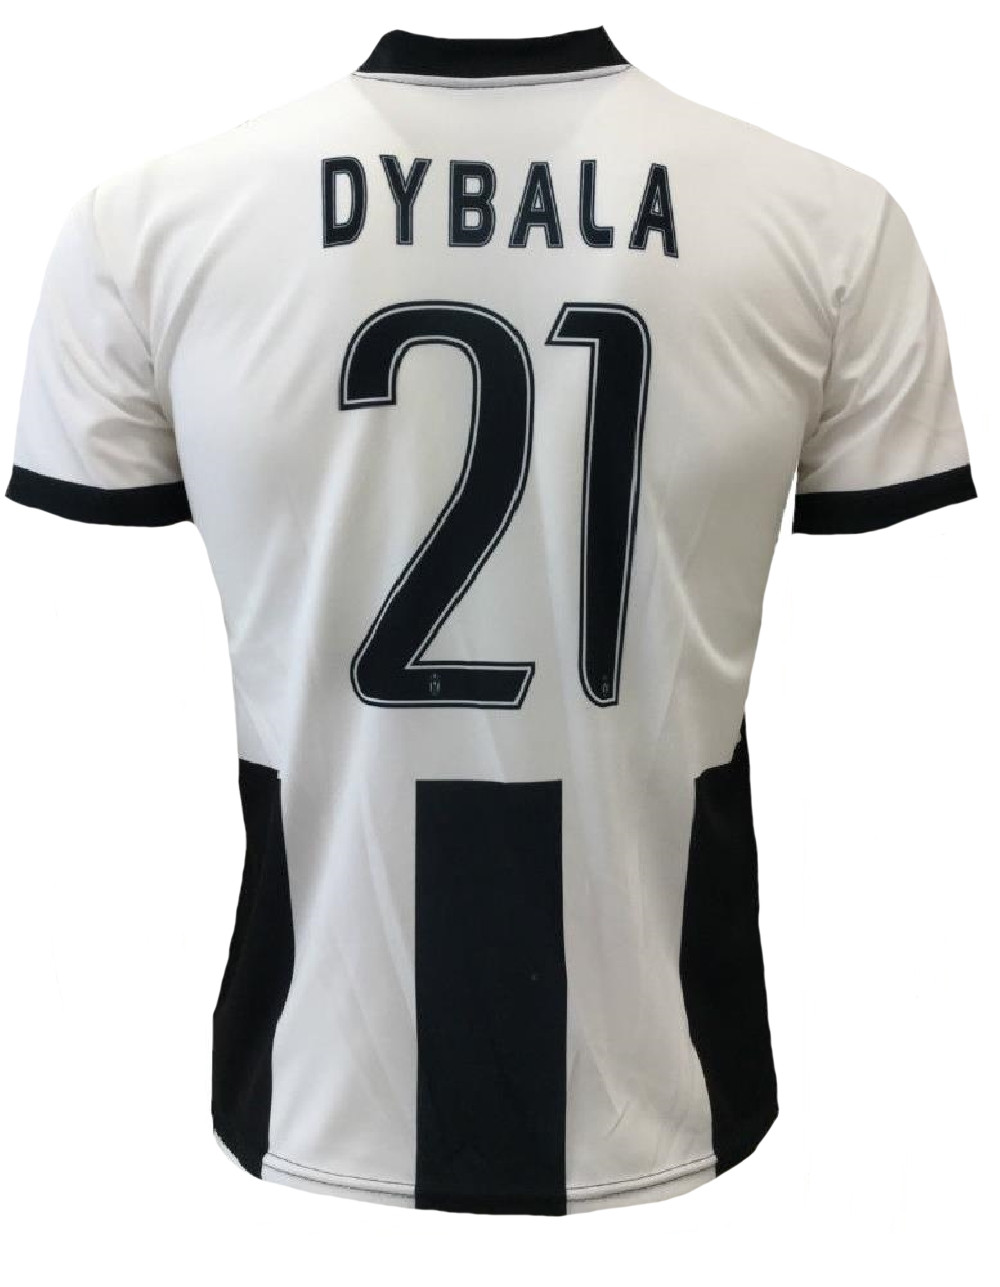 Maglia Uomo Juve Dybala Replica Ufficiale Autorizzata Juventus PS 24200 | Pelusciamo.com